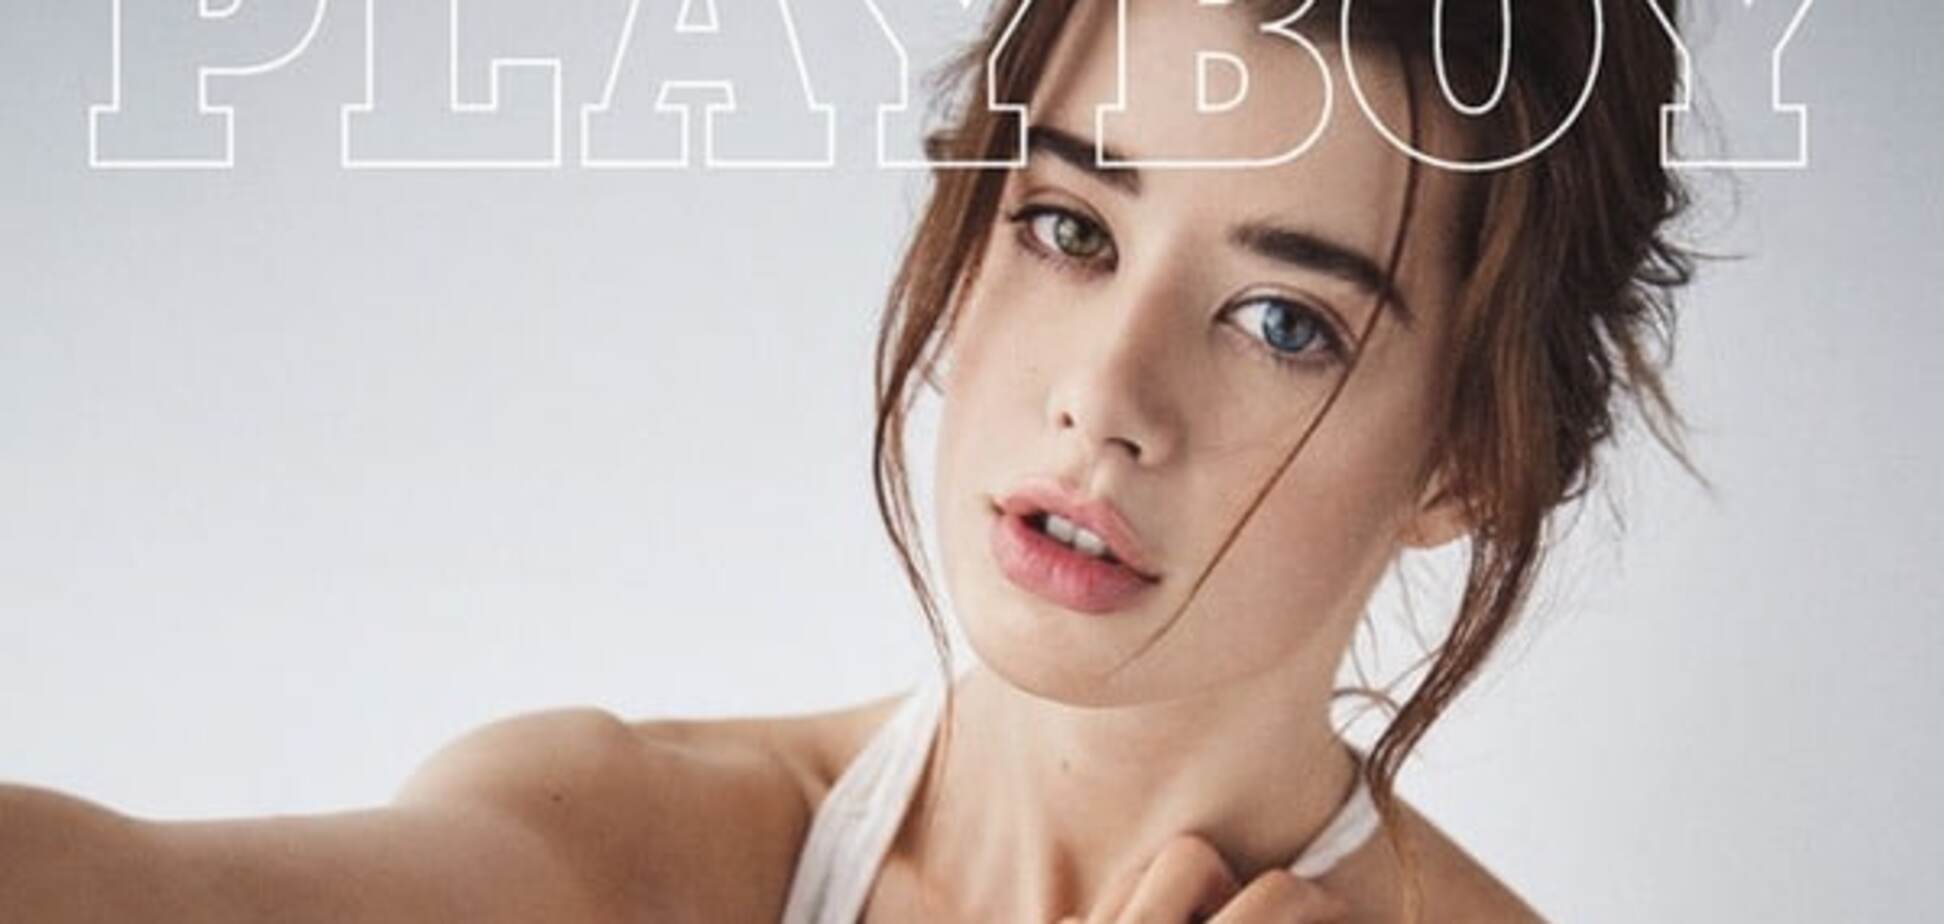 Playboy випустив обкладинку з дівчиною з різними очима